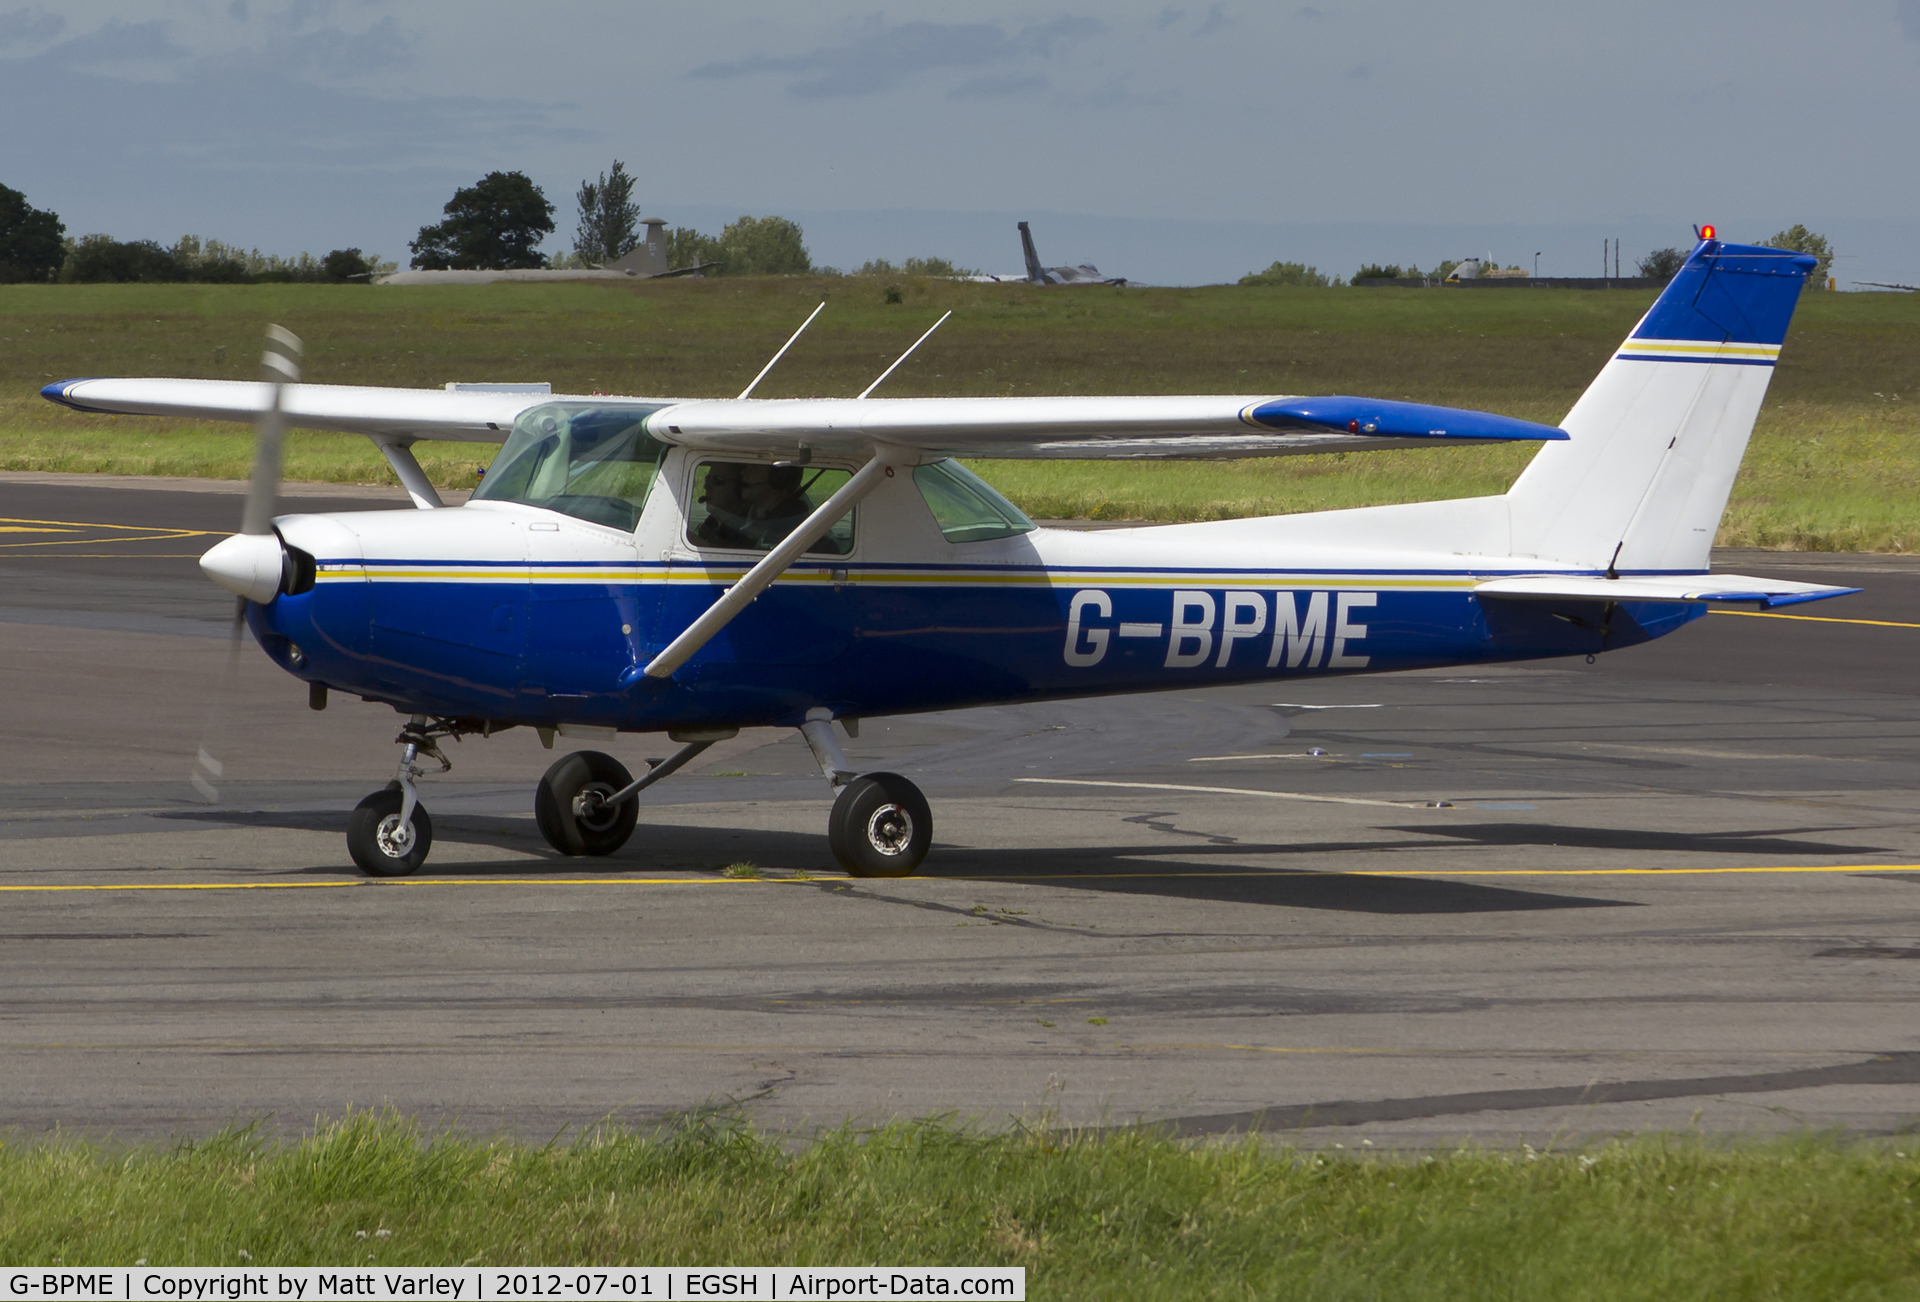 G-BPME, 1982 Cessna 152 C/N 152-85585, Arriving at SaxonAir.